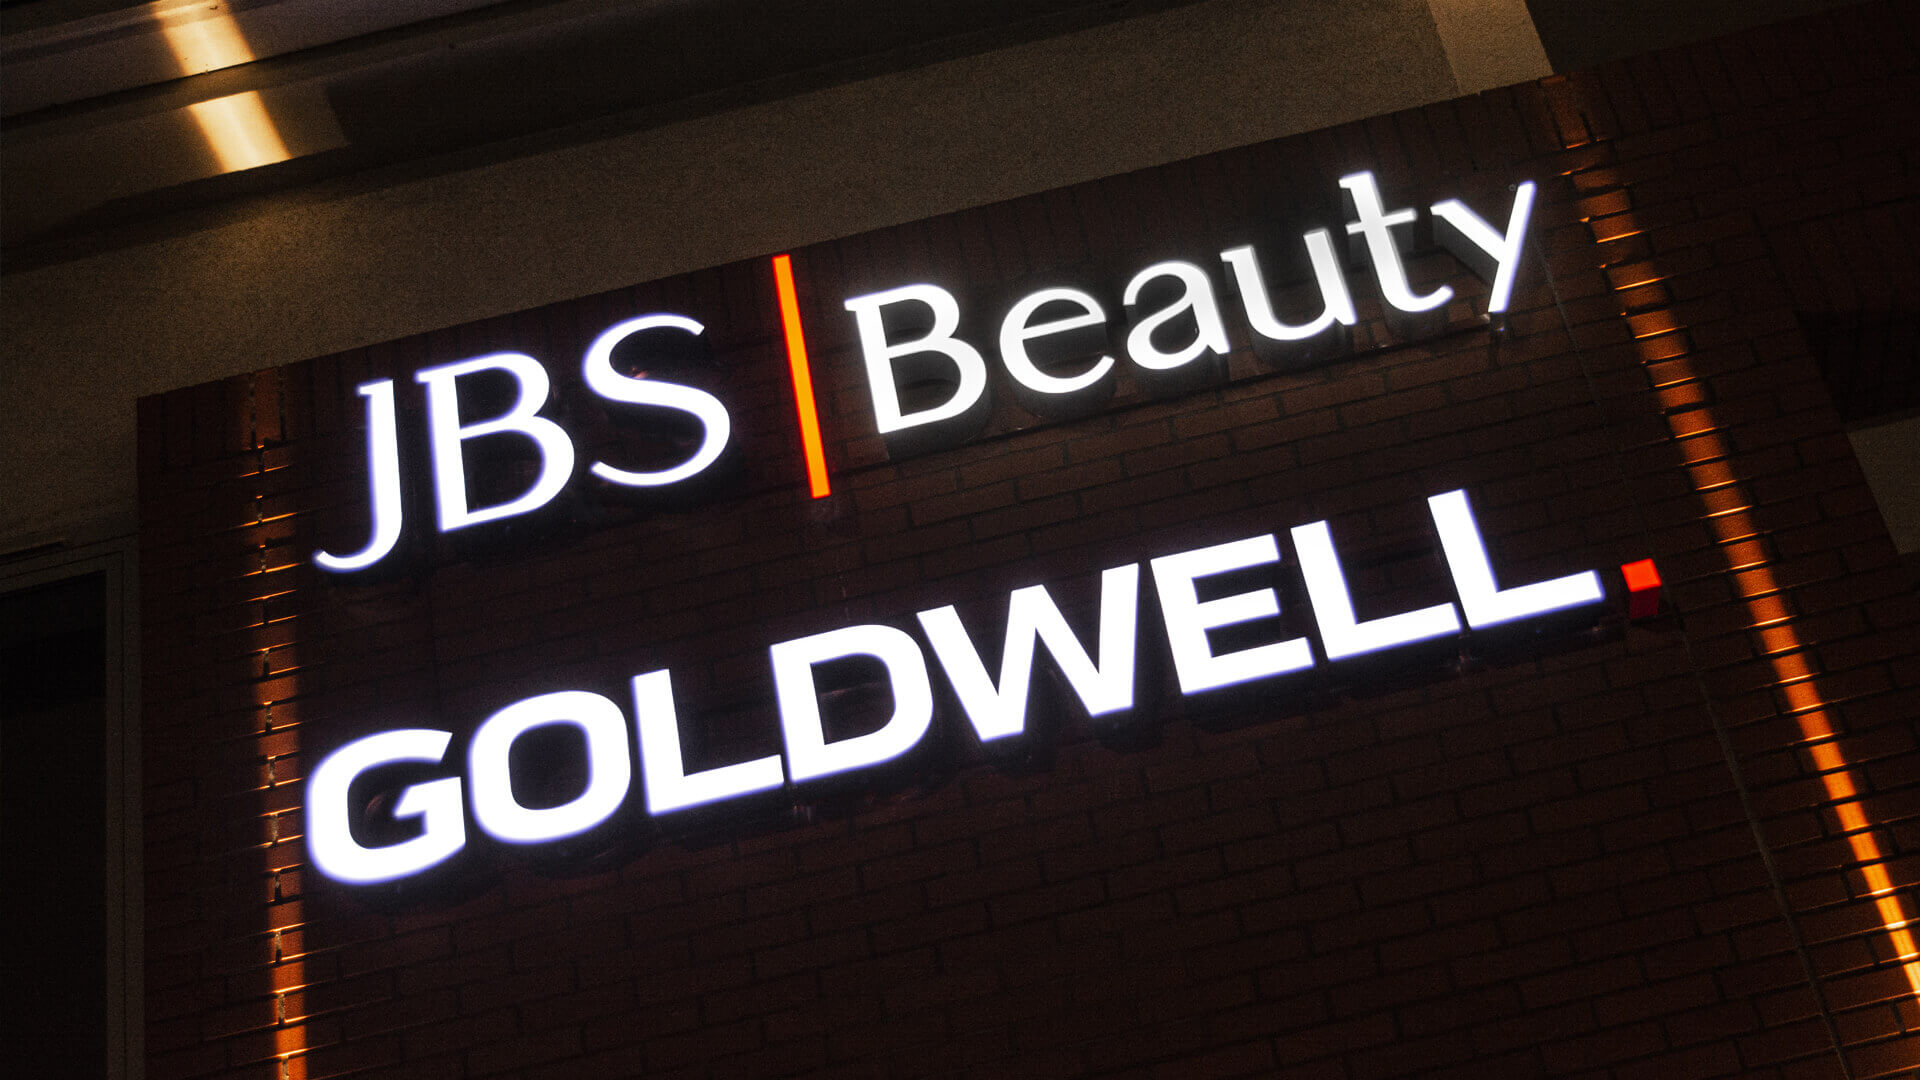 Goldwell goldwel - jbs-goldwell-bauty-lettera-colore-illuminata-led-lettera-sulla-parete-dell'edificio-segnali-lettera-sulla-altezza-del-beglach-segnali-lettera-sull'edificio-ufficio-gdansk-letnica (11) 